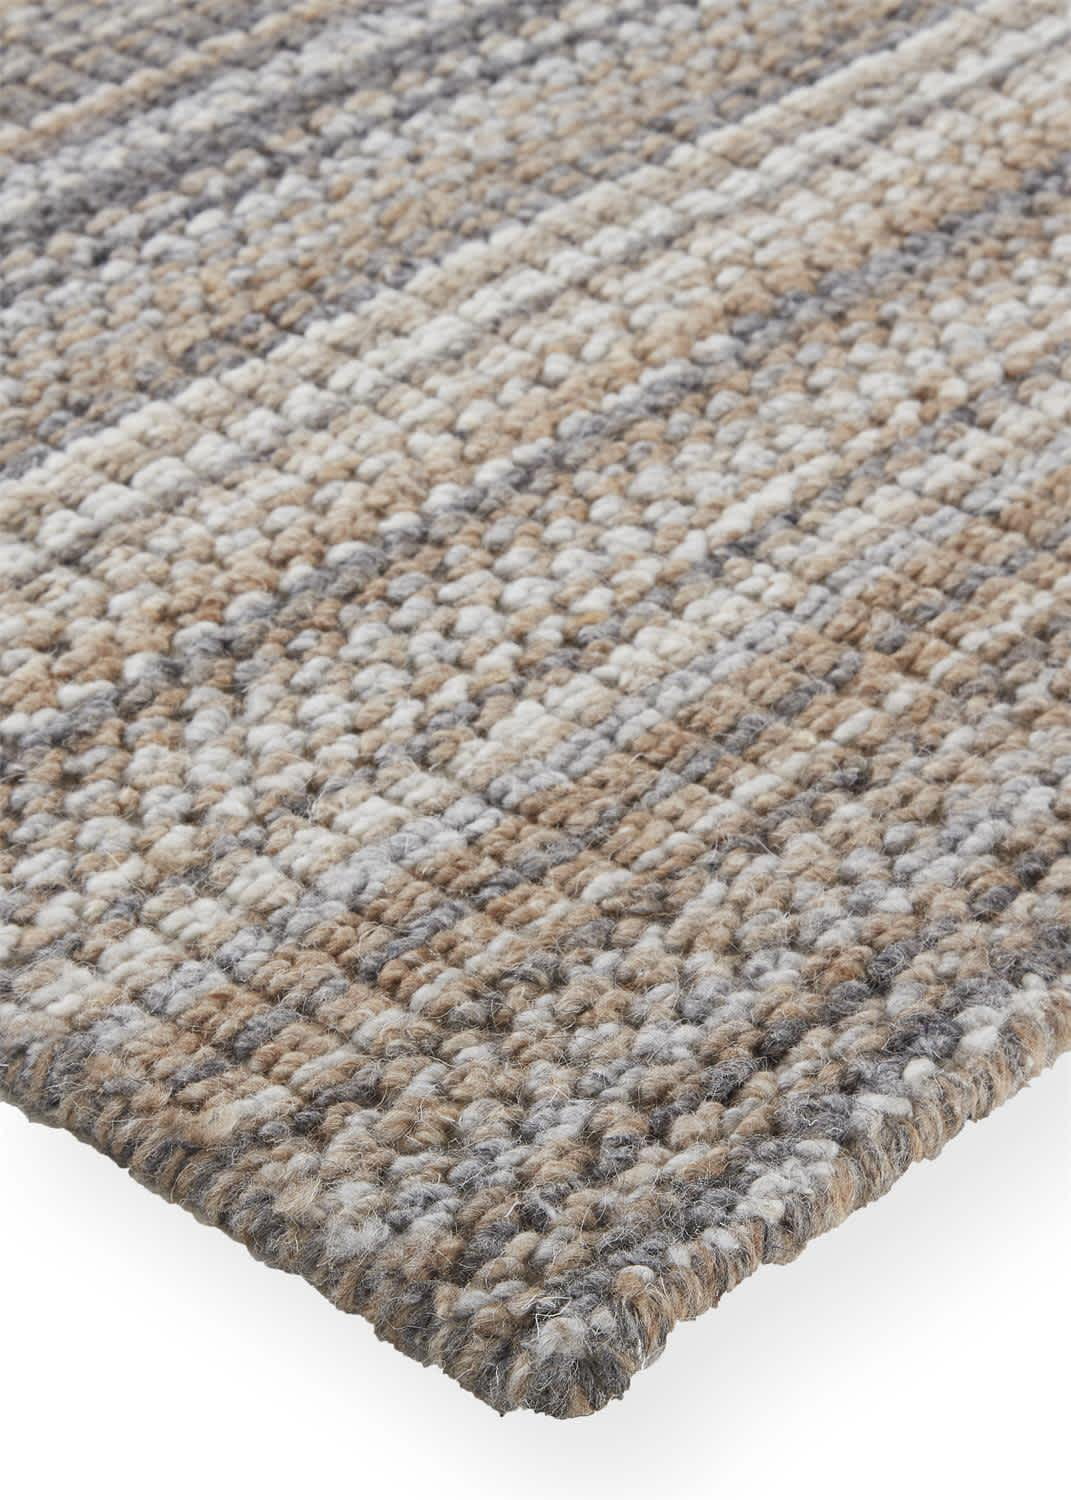 Free shipping 2.5'x4' Handmade needlepoint woolen rugs,100% handmade New  Zealand wool carpets - AliExpress